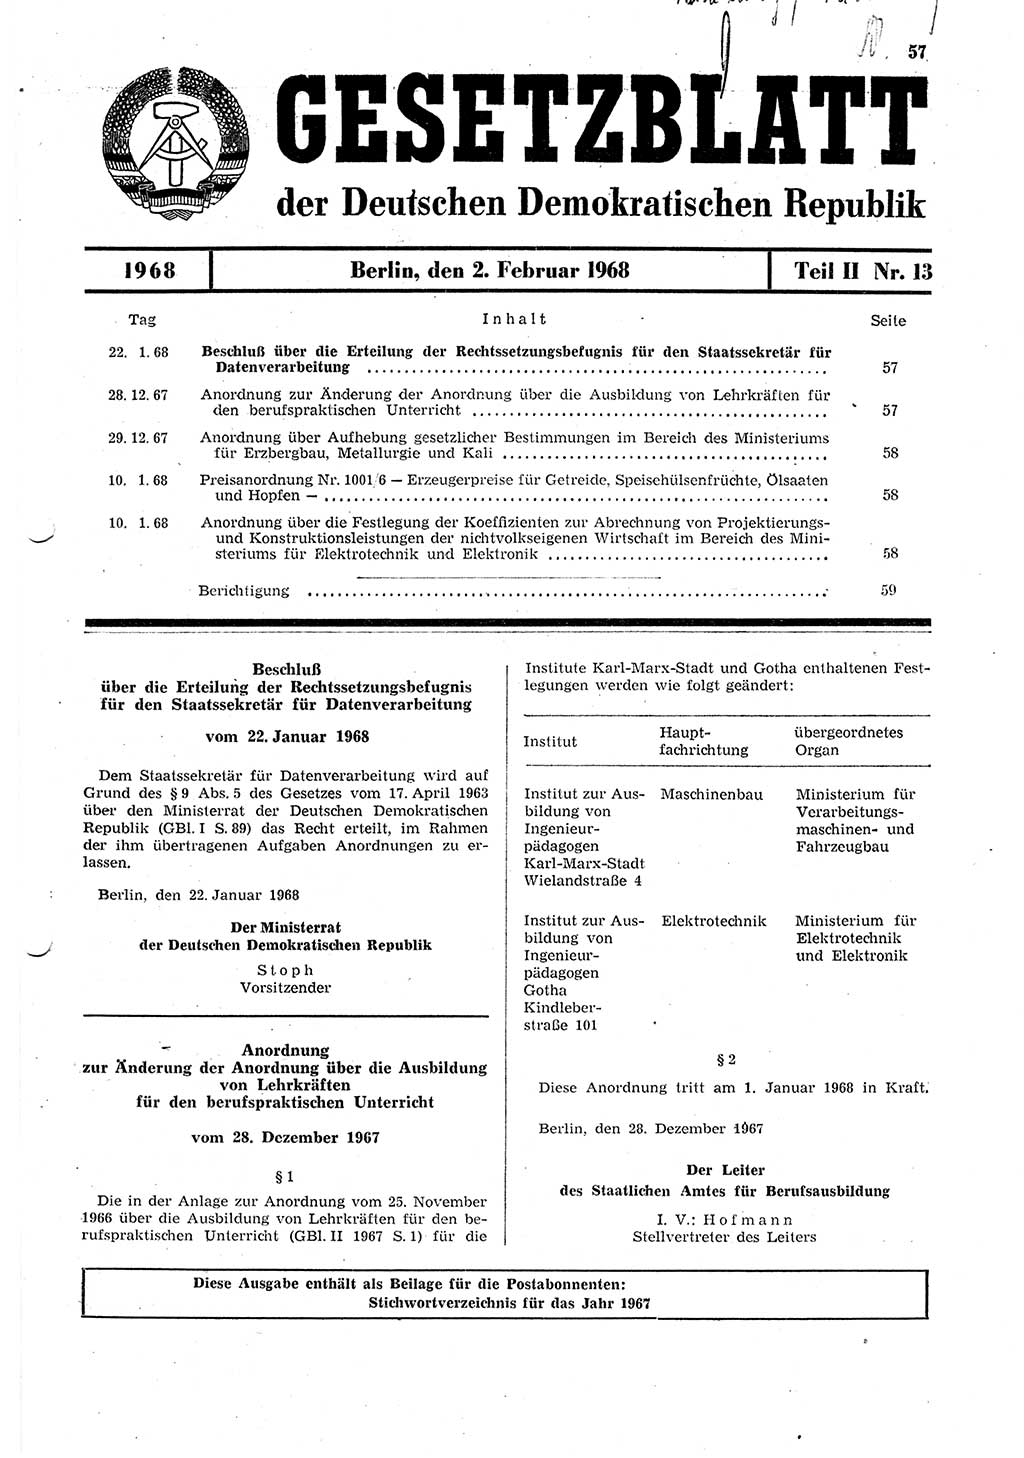 Gesetzblatt (GBl.) der Deutschen Demokratischen Republik (DDR) Teil ⅠⅠ 1968, Seite 57 (GBl. DDR ⅠⅠ 1968, S. 57)